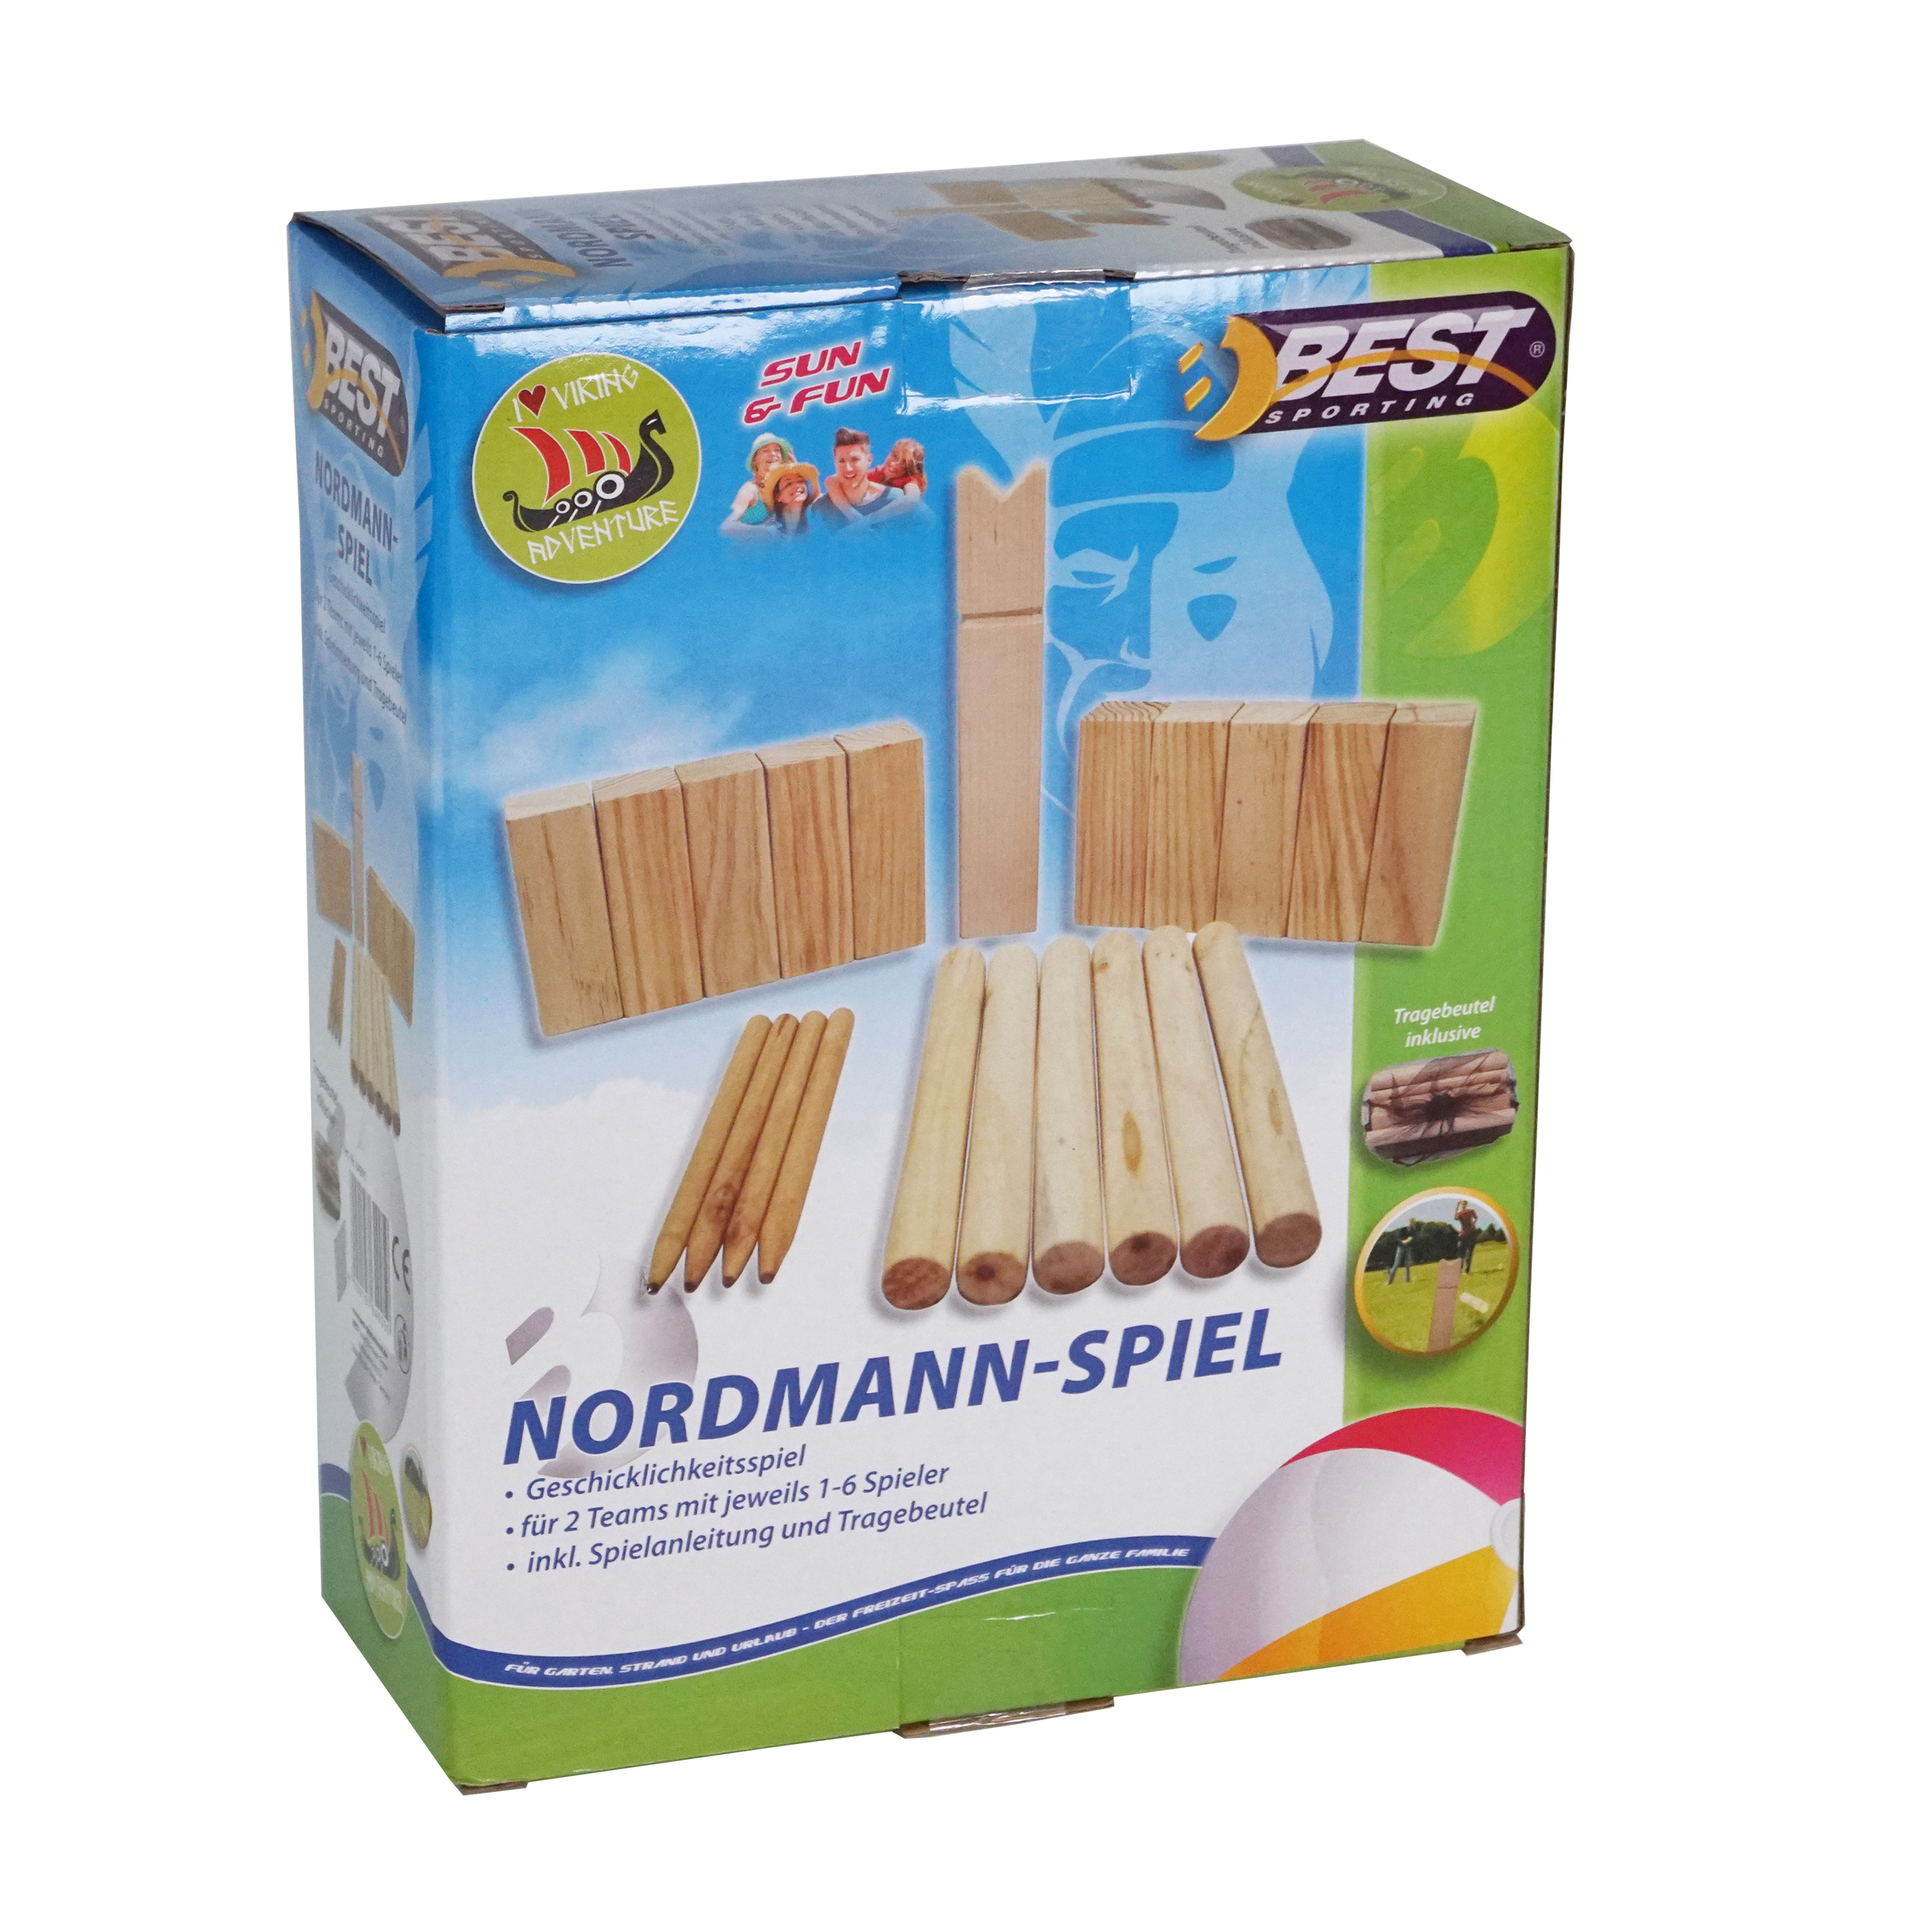 BEST Sport Nordmann-Spiel